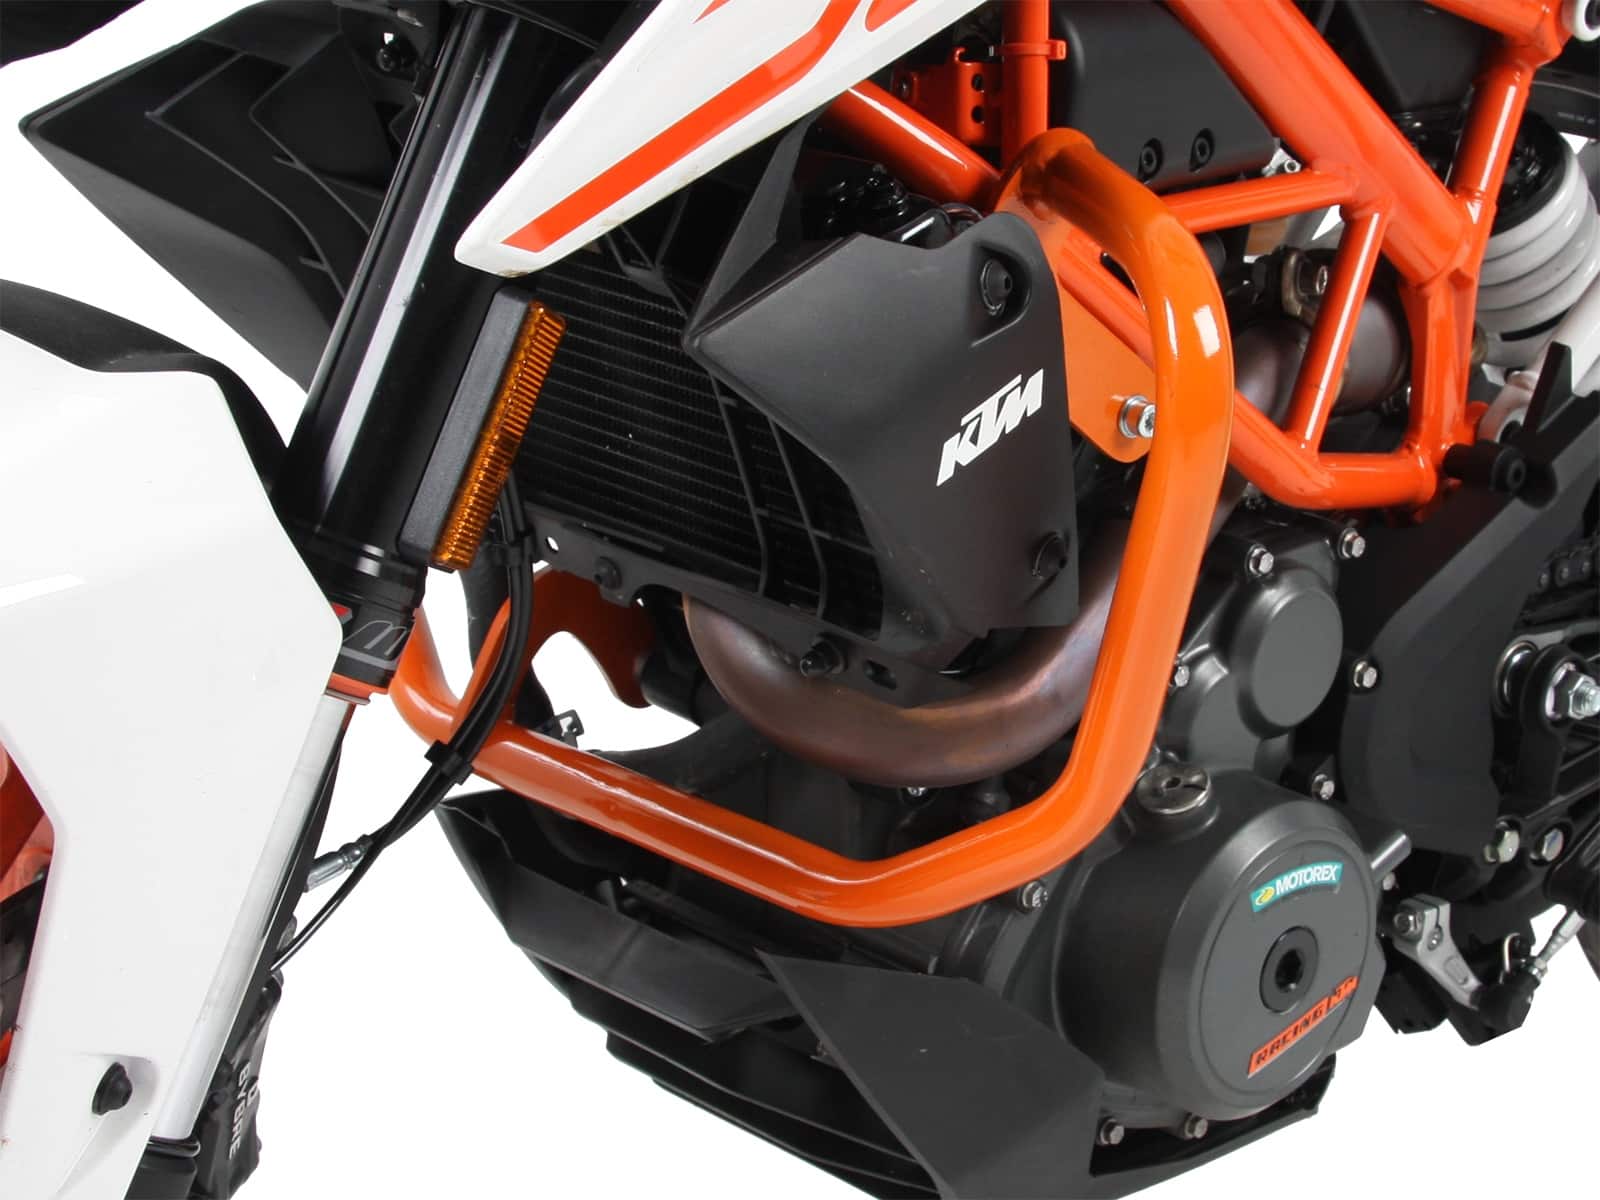 Motorradmotor und Rahmenschutzbügelschutz Für Duke 390 2013-2019 Duke 250 2017-2019 Orange 